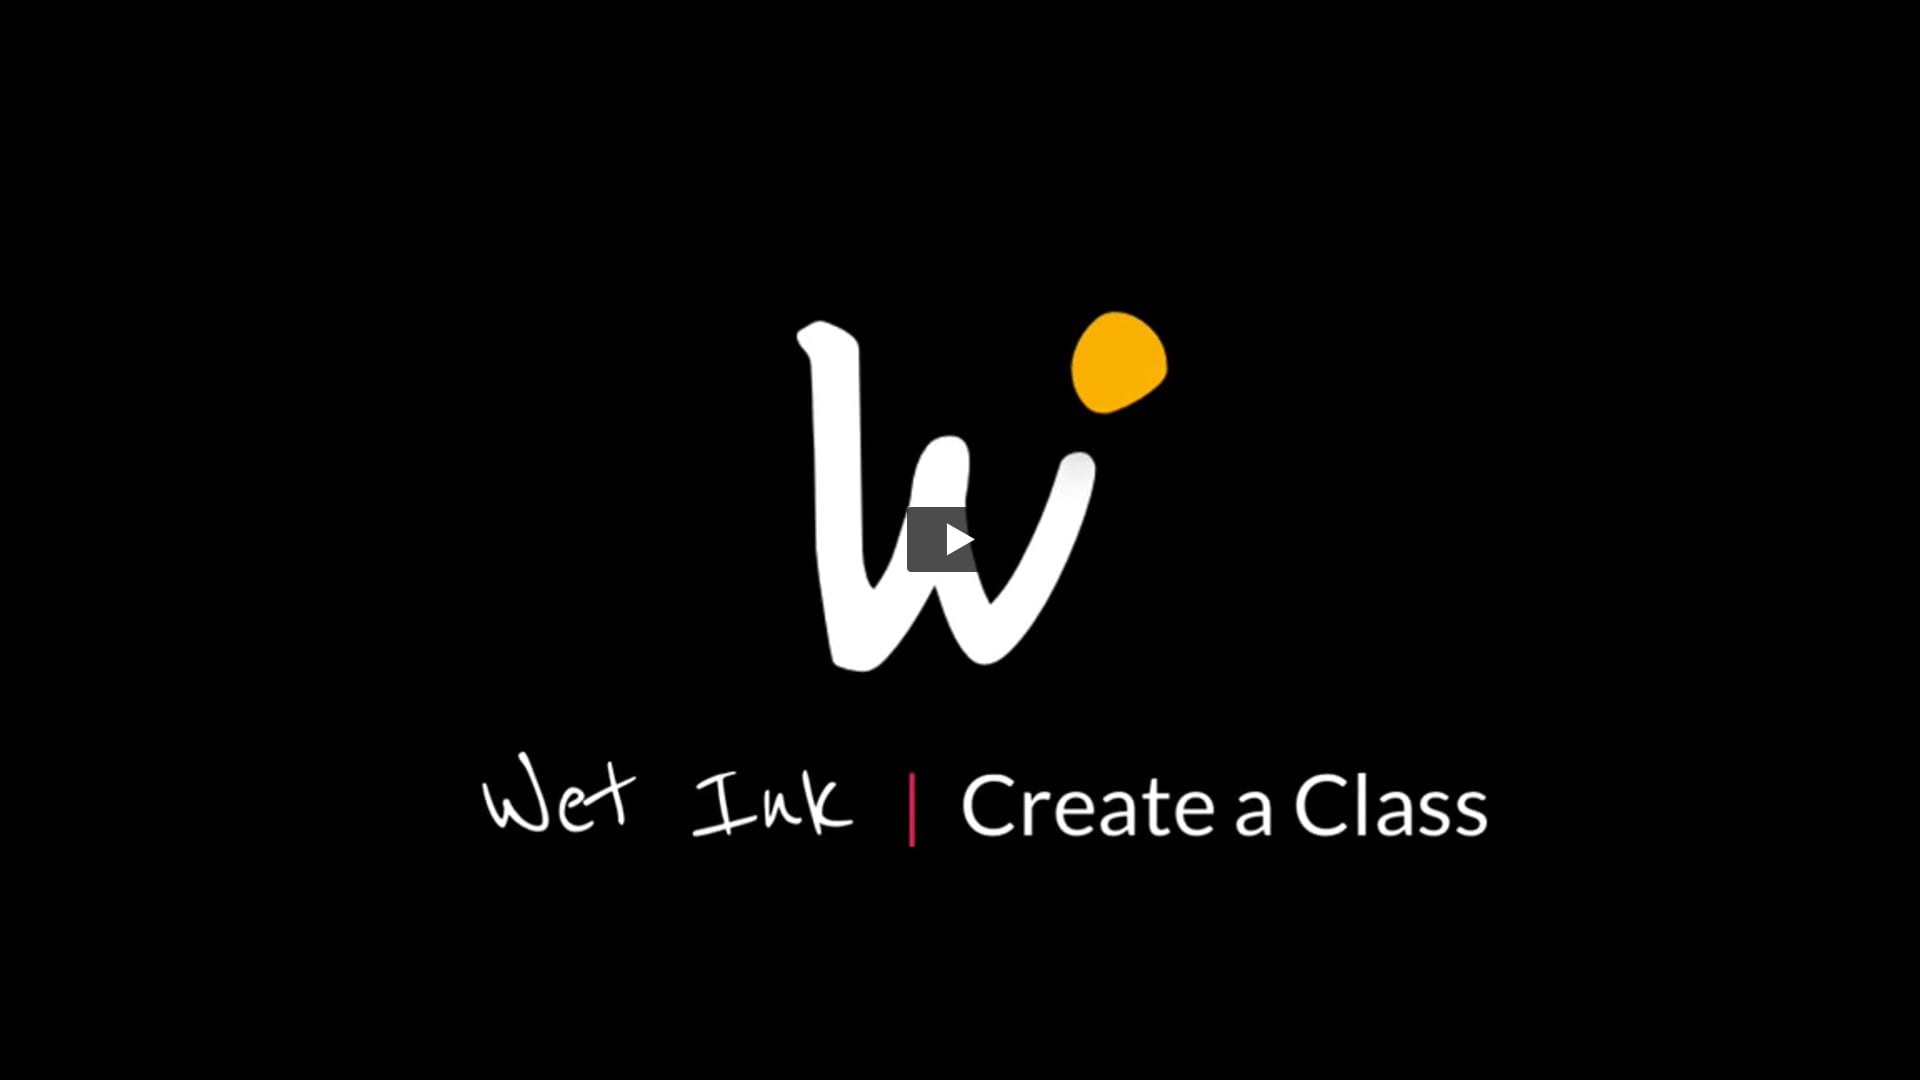 Create a class